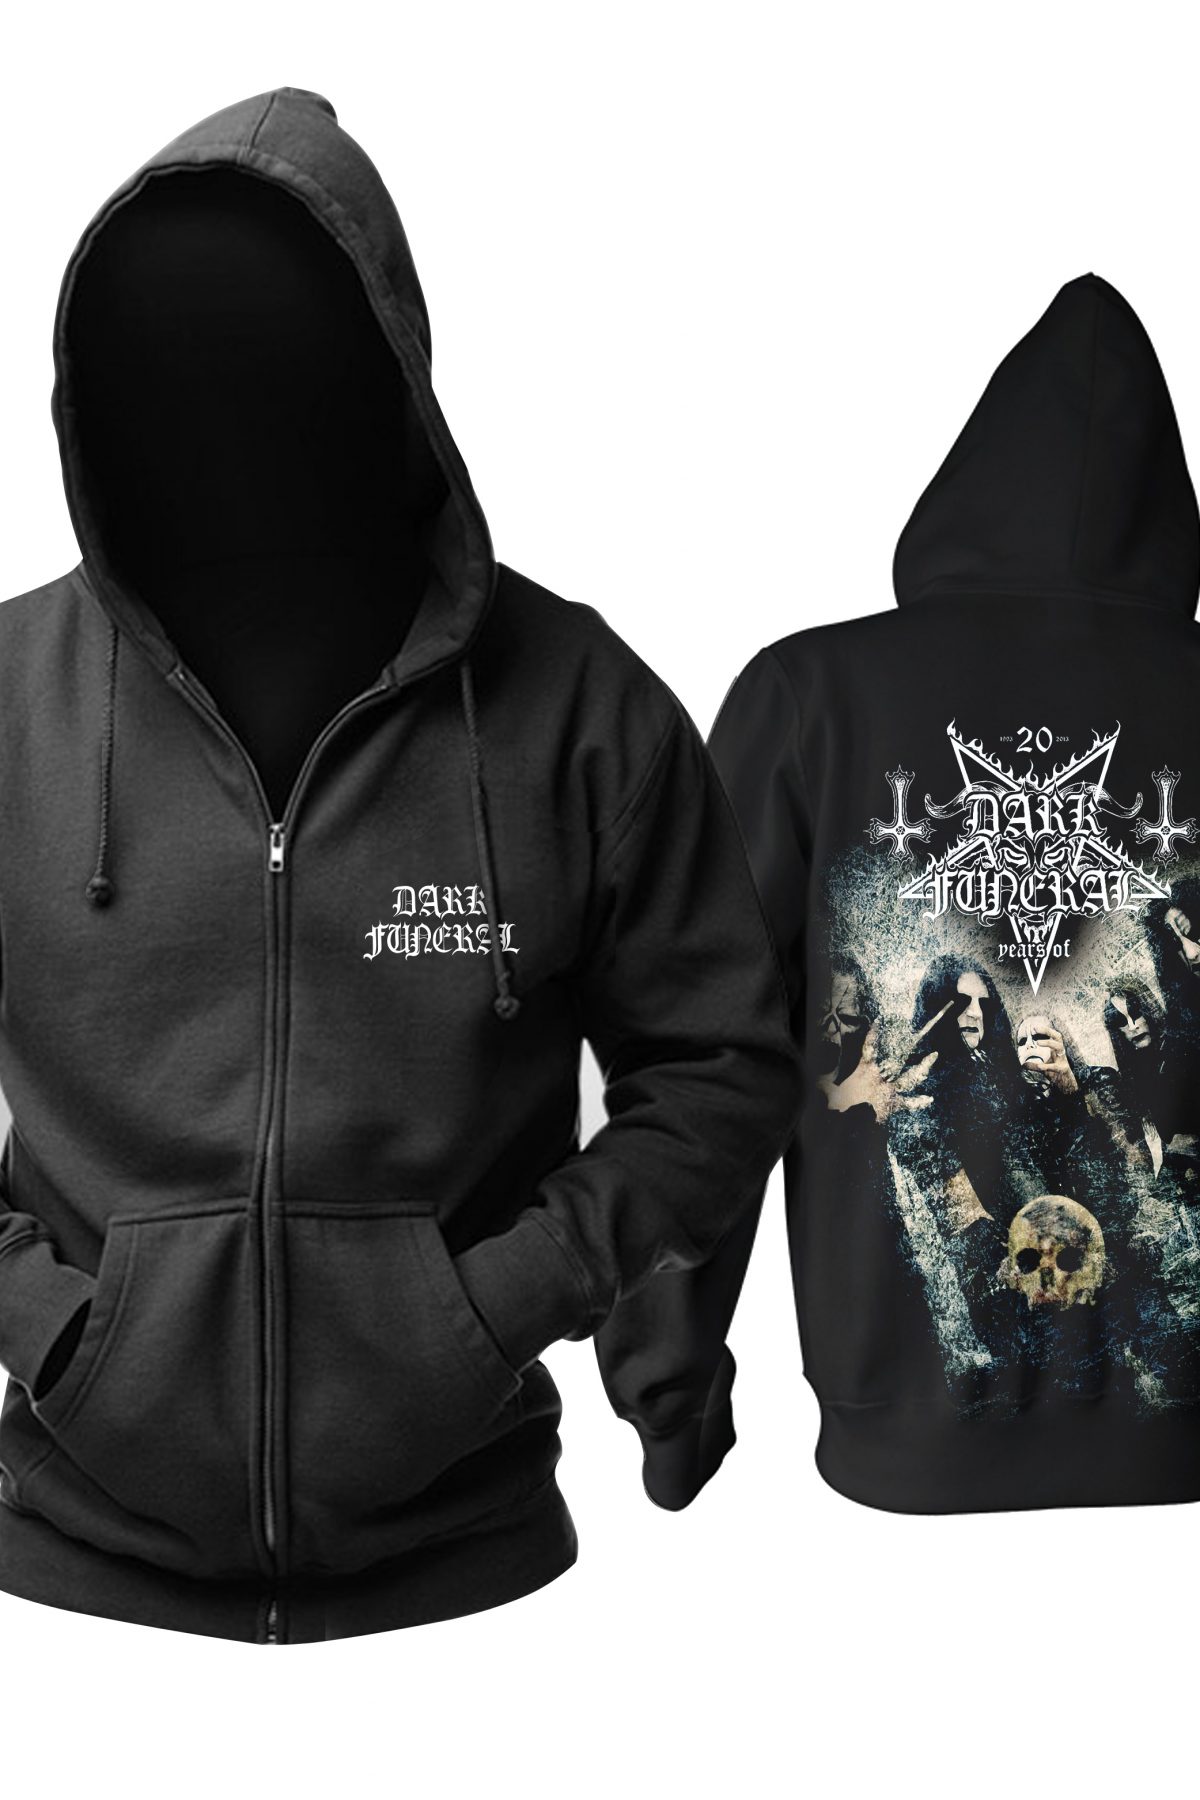 Buy Hoodie Dark Funeral Black Metal Band - IdolStore